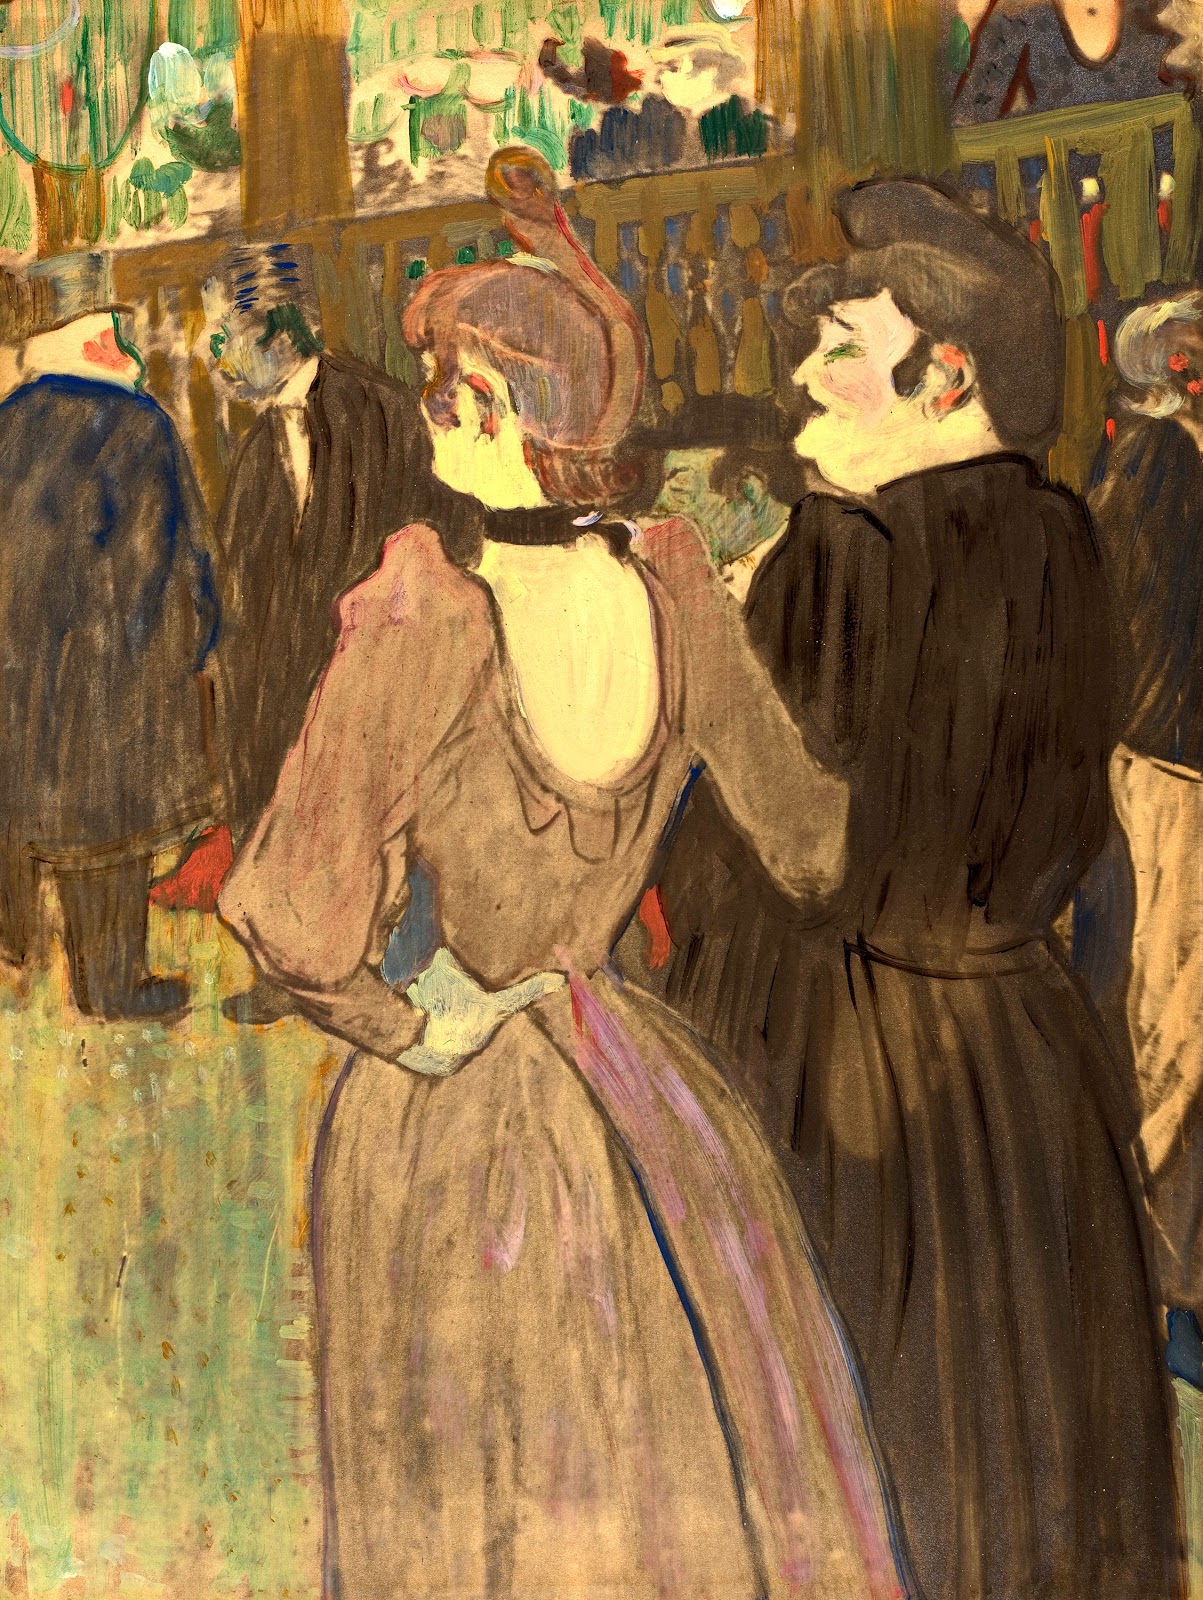 Henri+de+Toulouse+Lautrec-1864-1901 (64).jpg